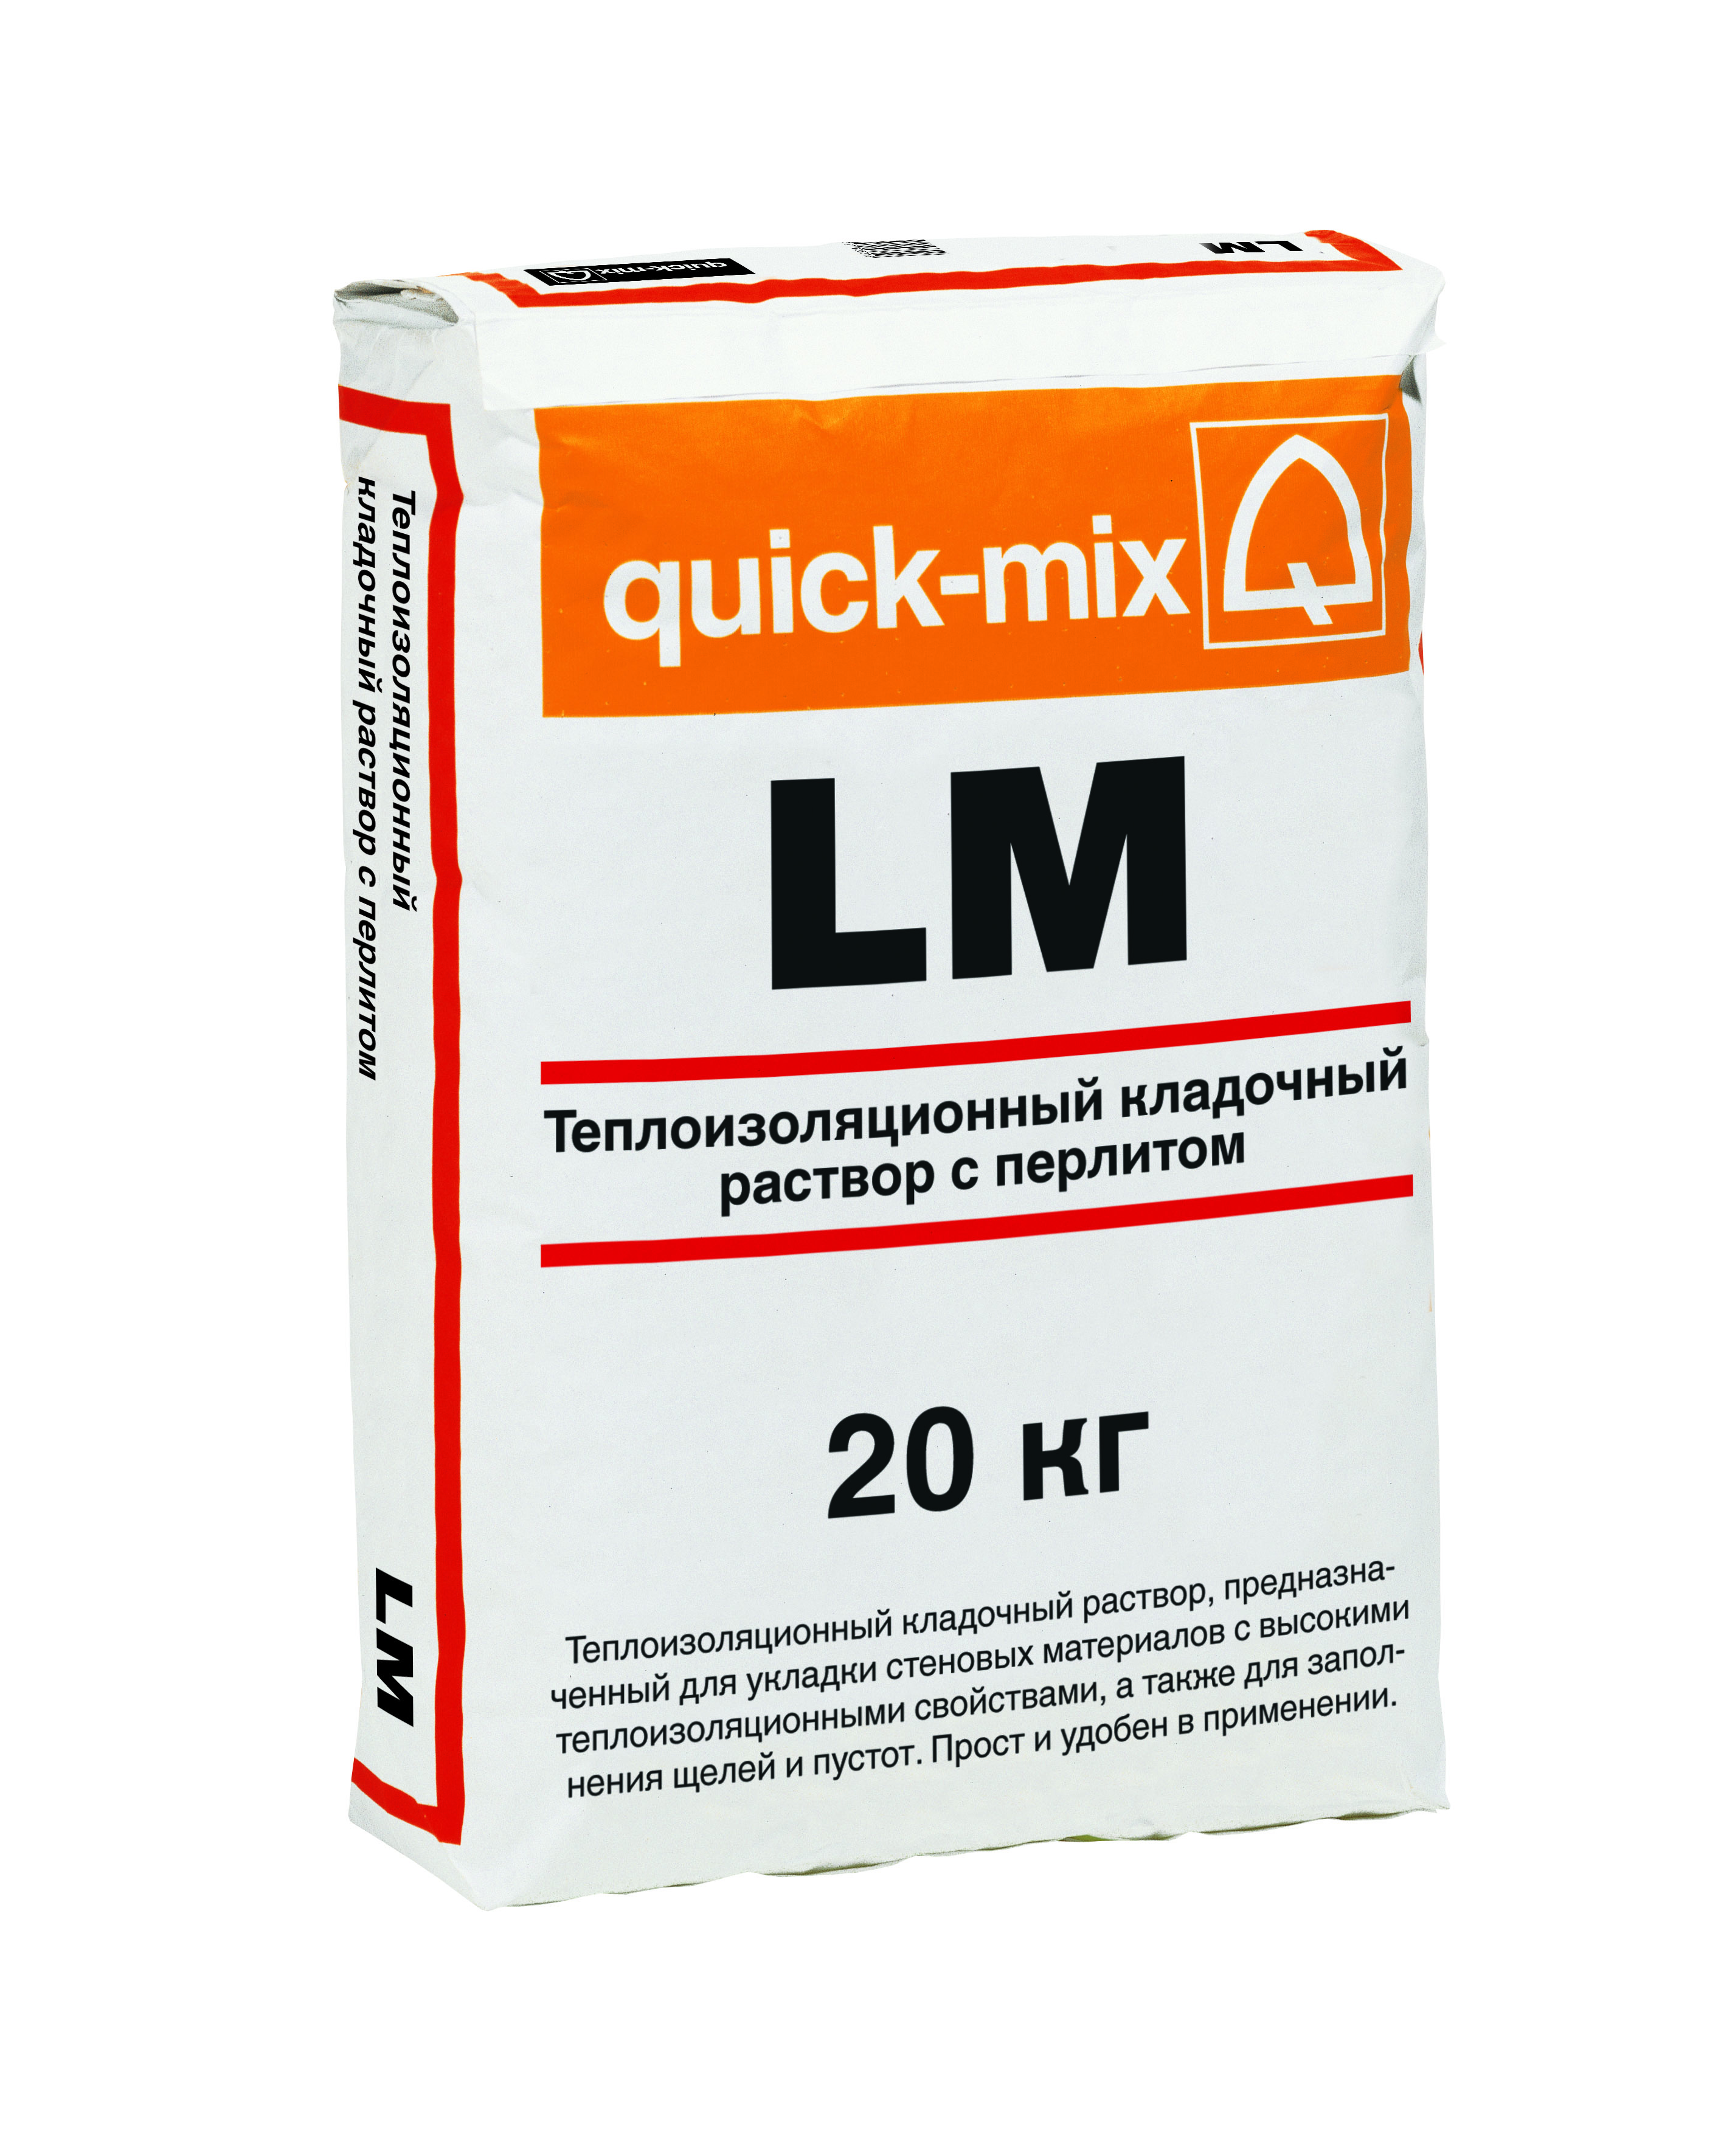 LM quick-mix теплоизоляционный кладочный раствор с перлитом